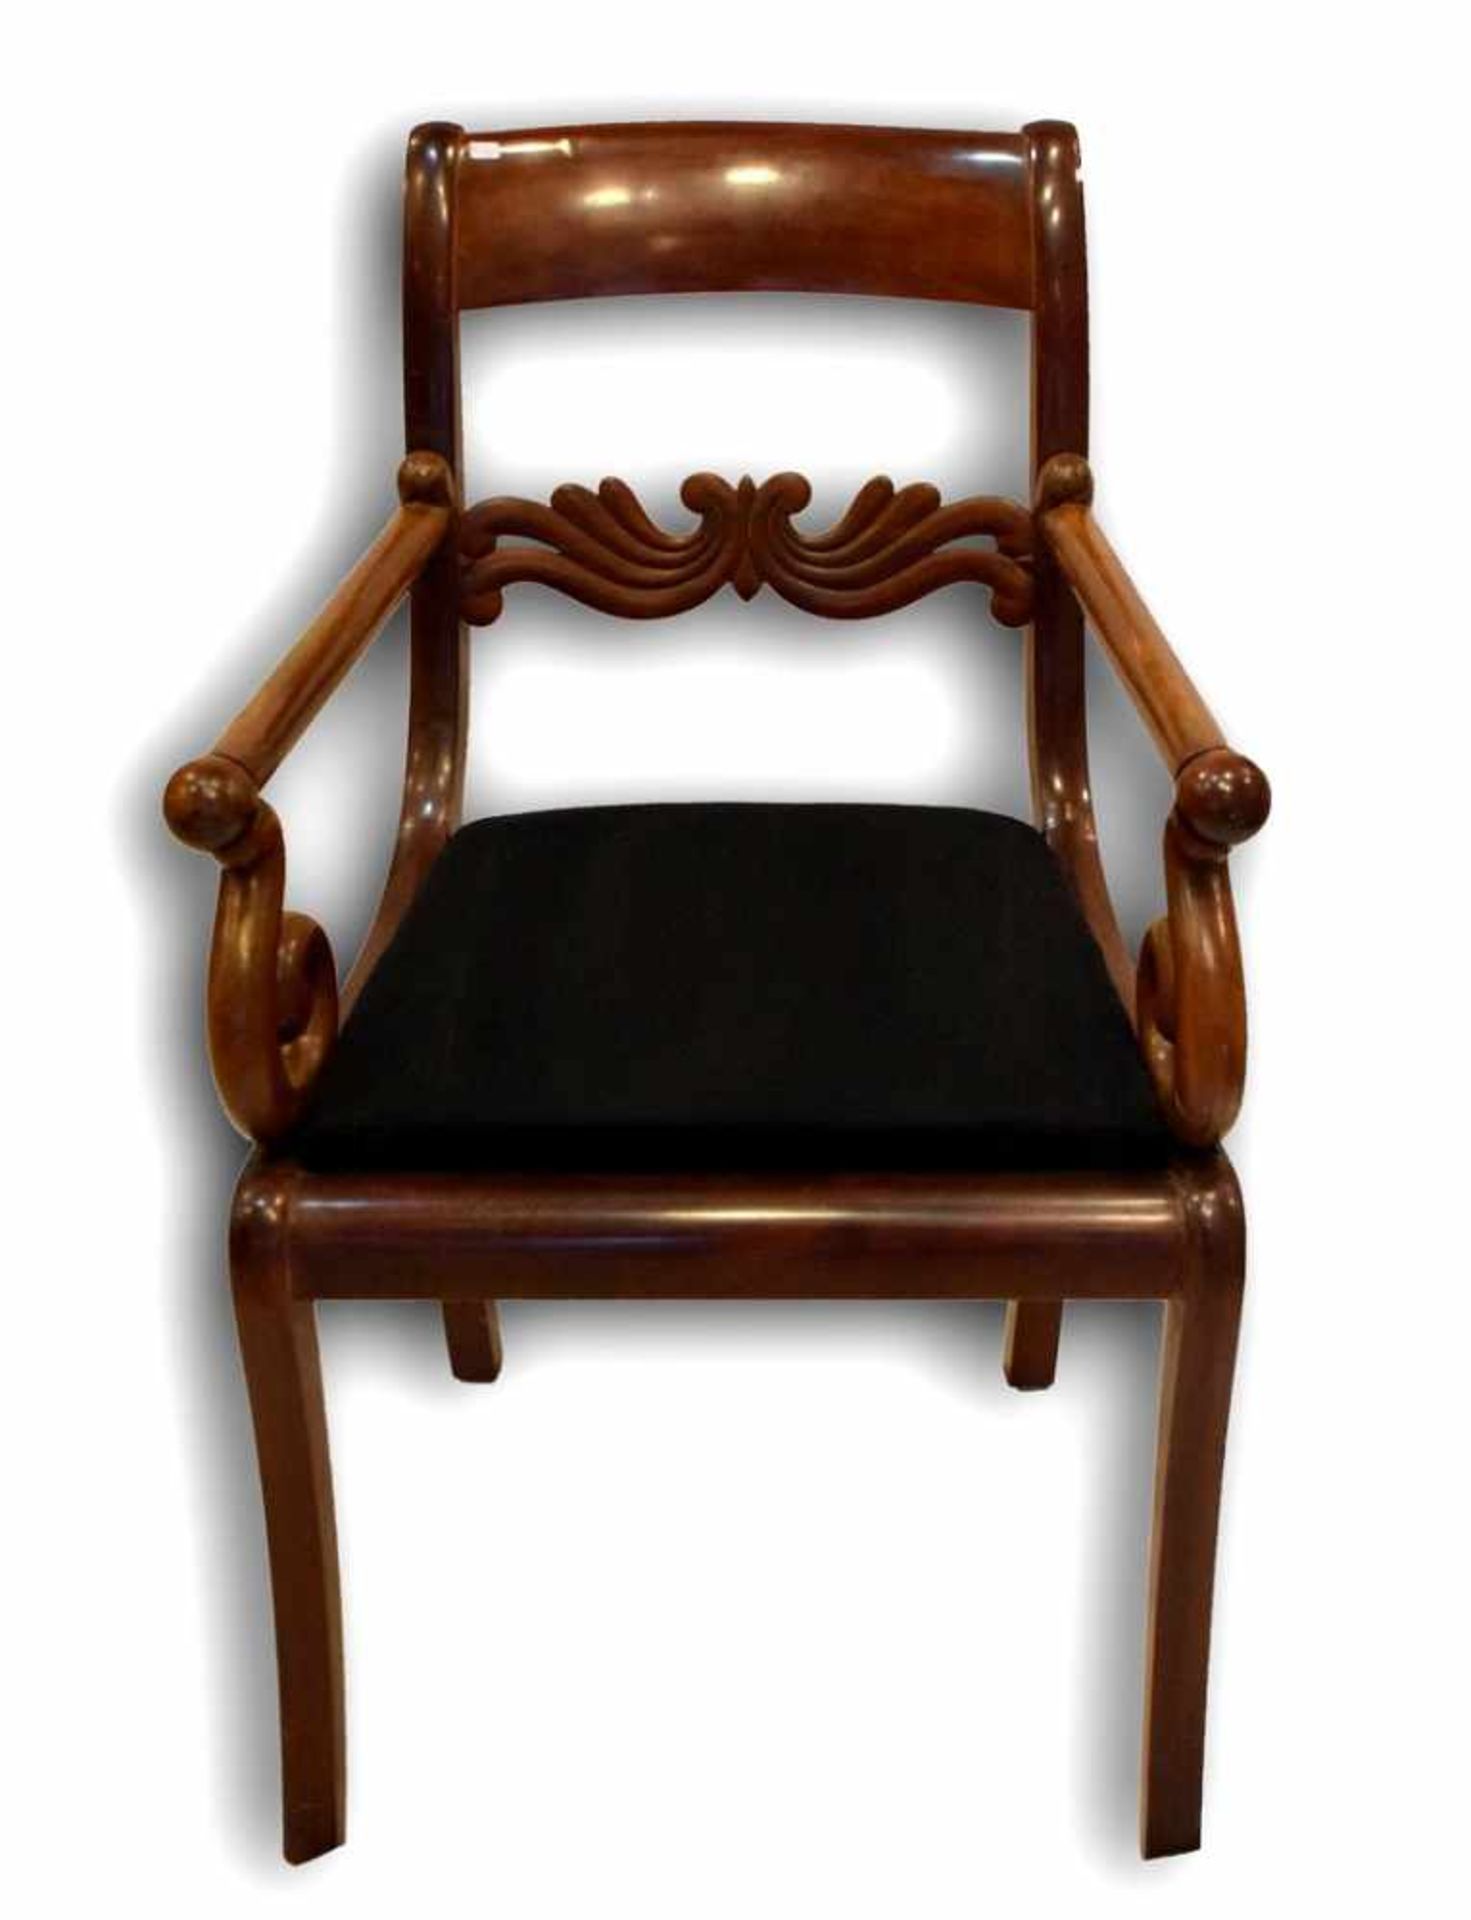 Biedermeier-SesselMahagoni, vier leicht nach unten verjüngende Beine, verzierter Rücken, verzierte